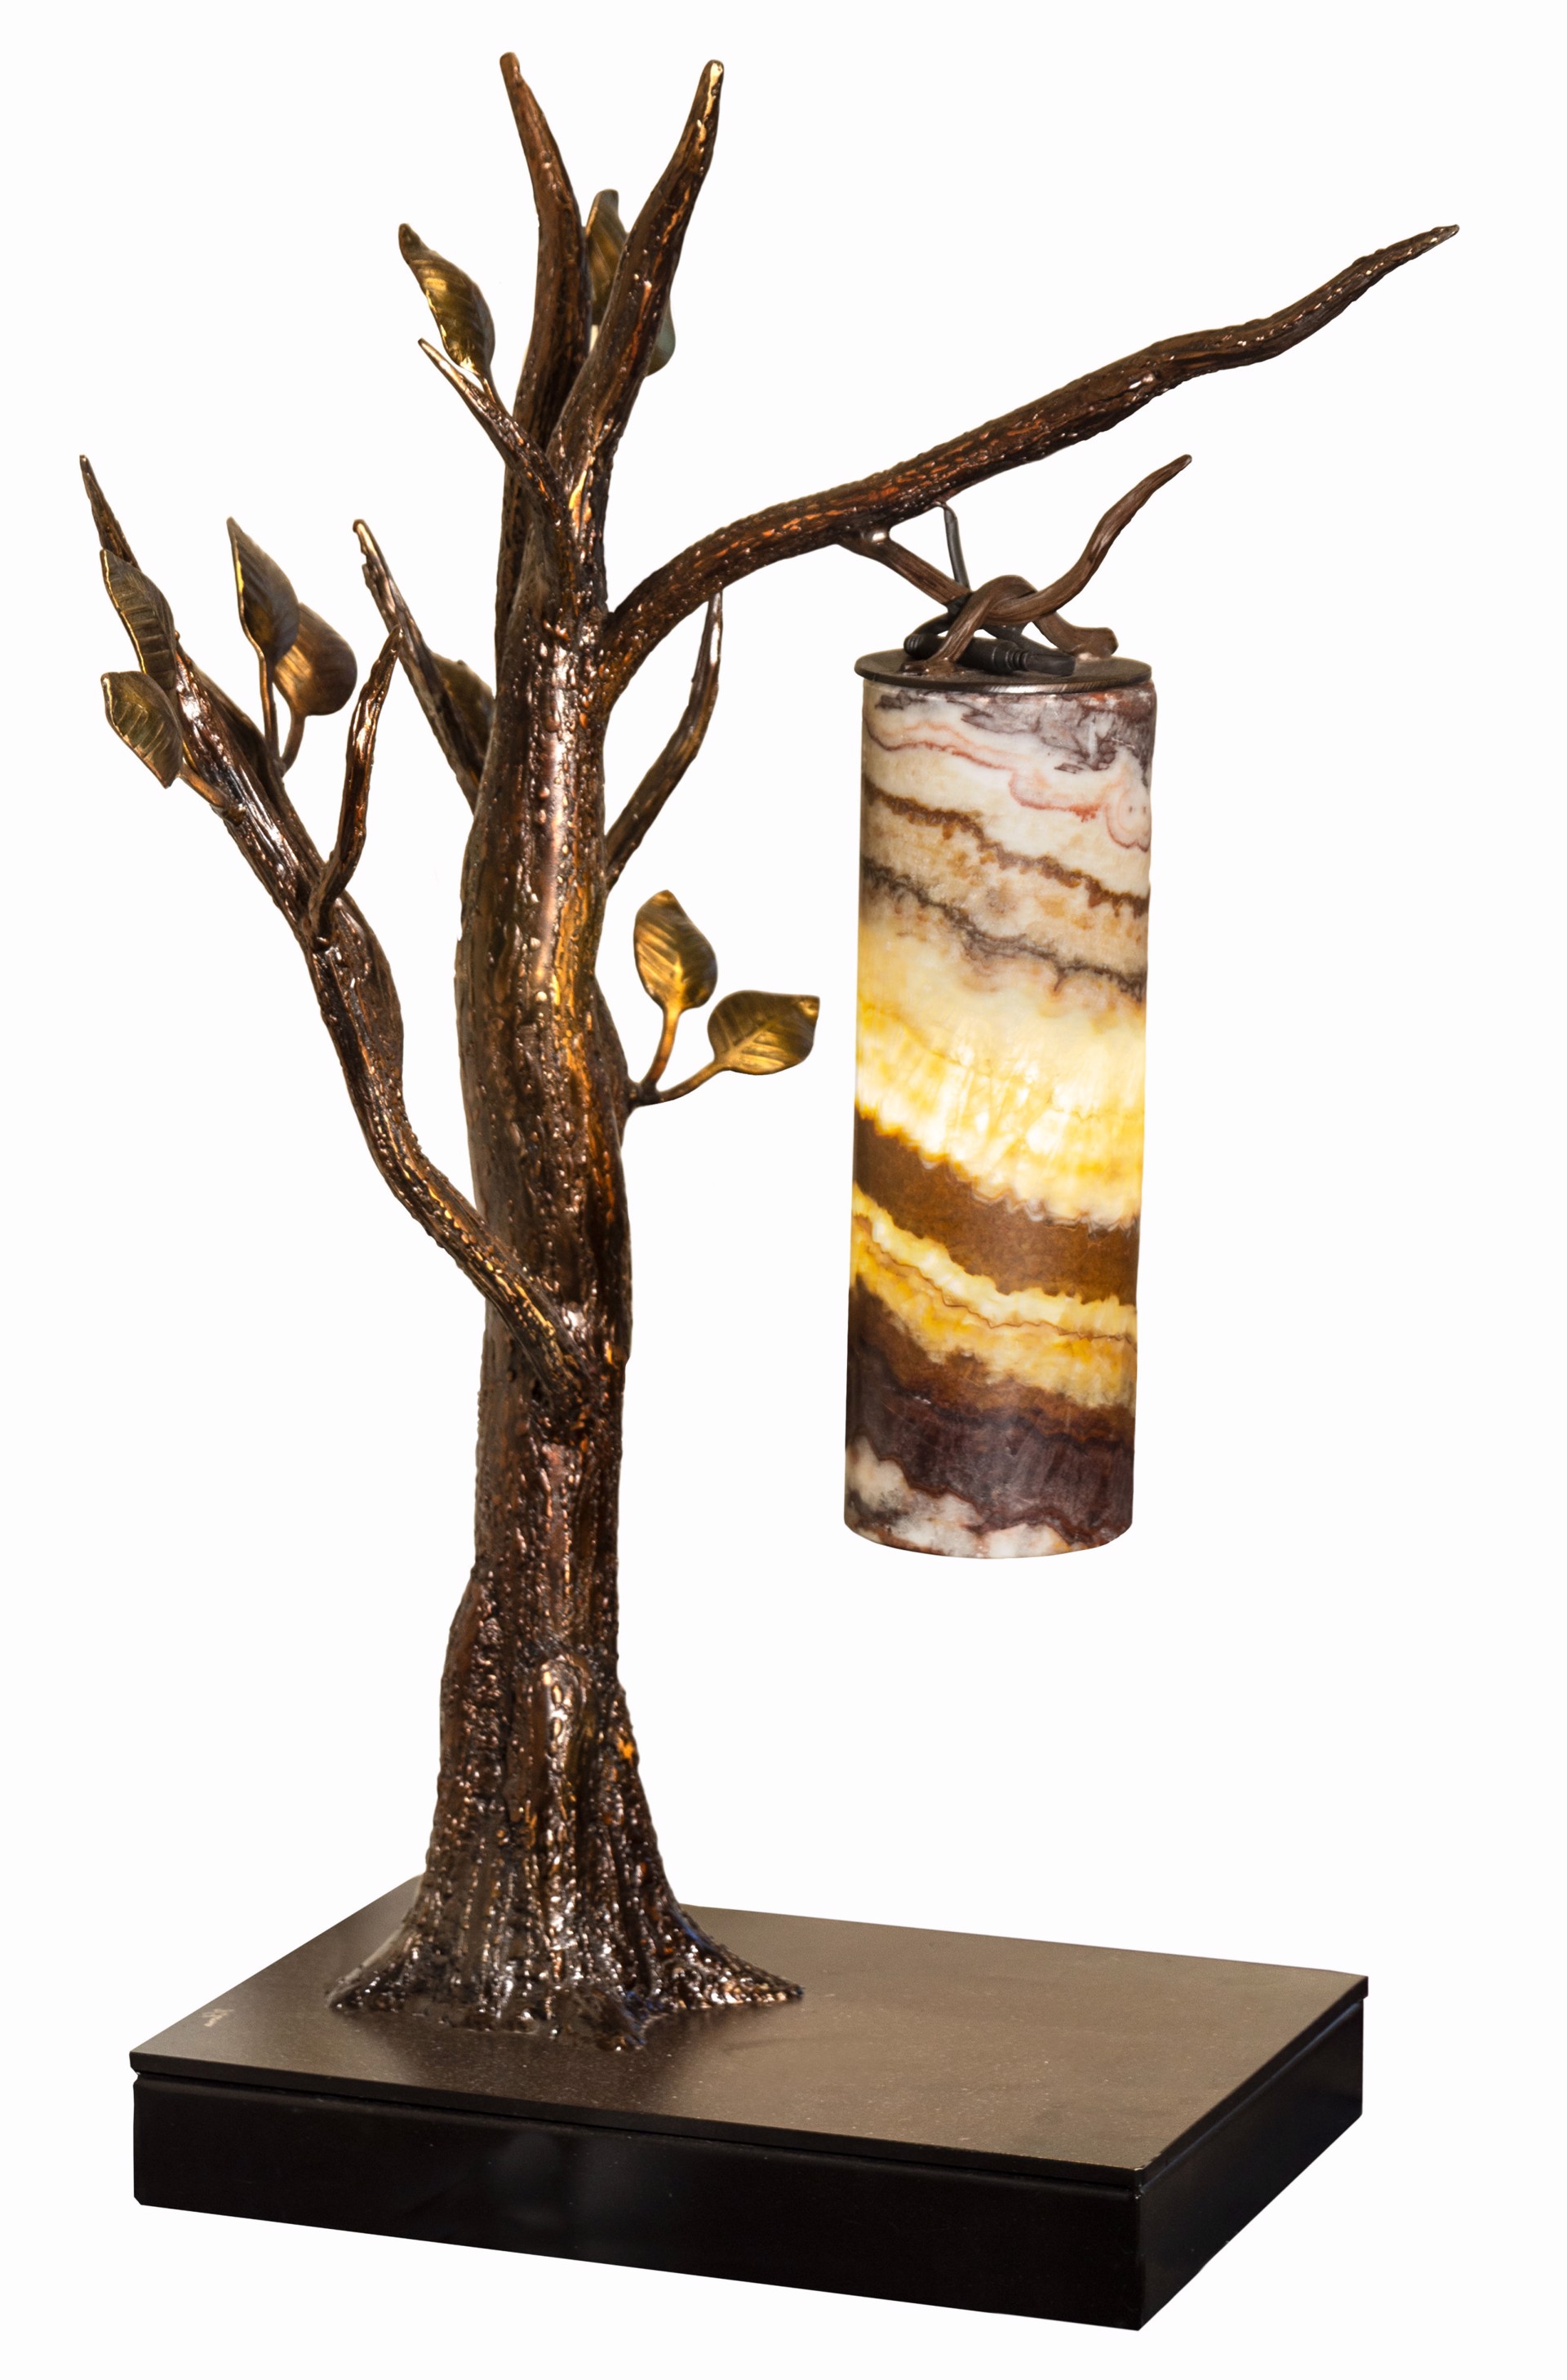 Forest Hanging Desk Lamp by Jim Vilona